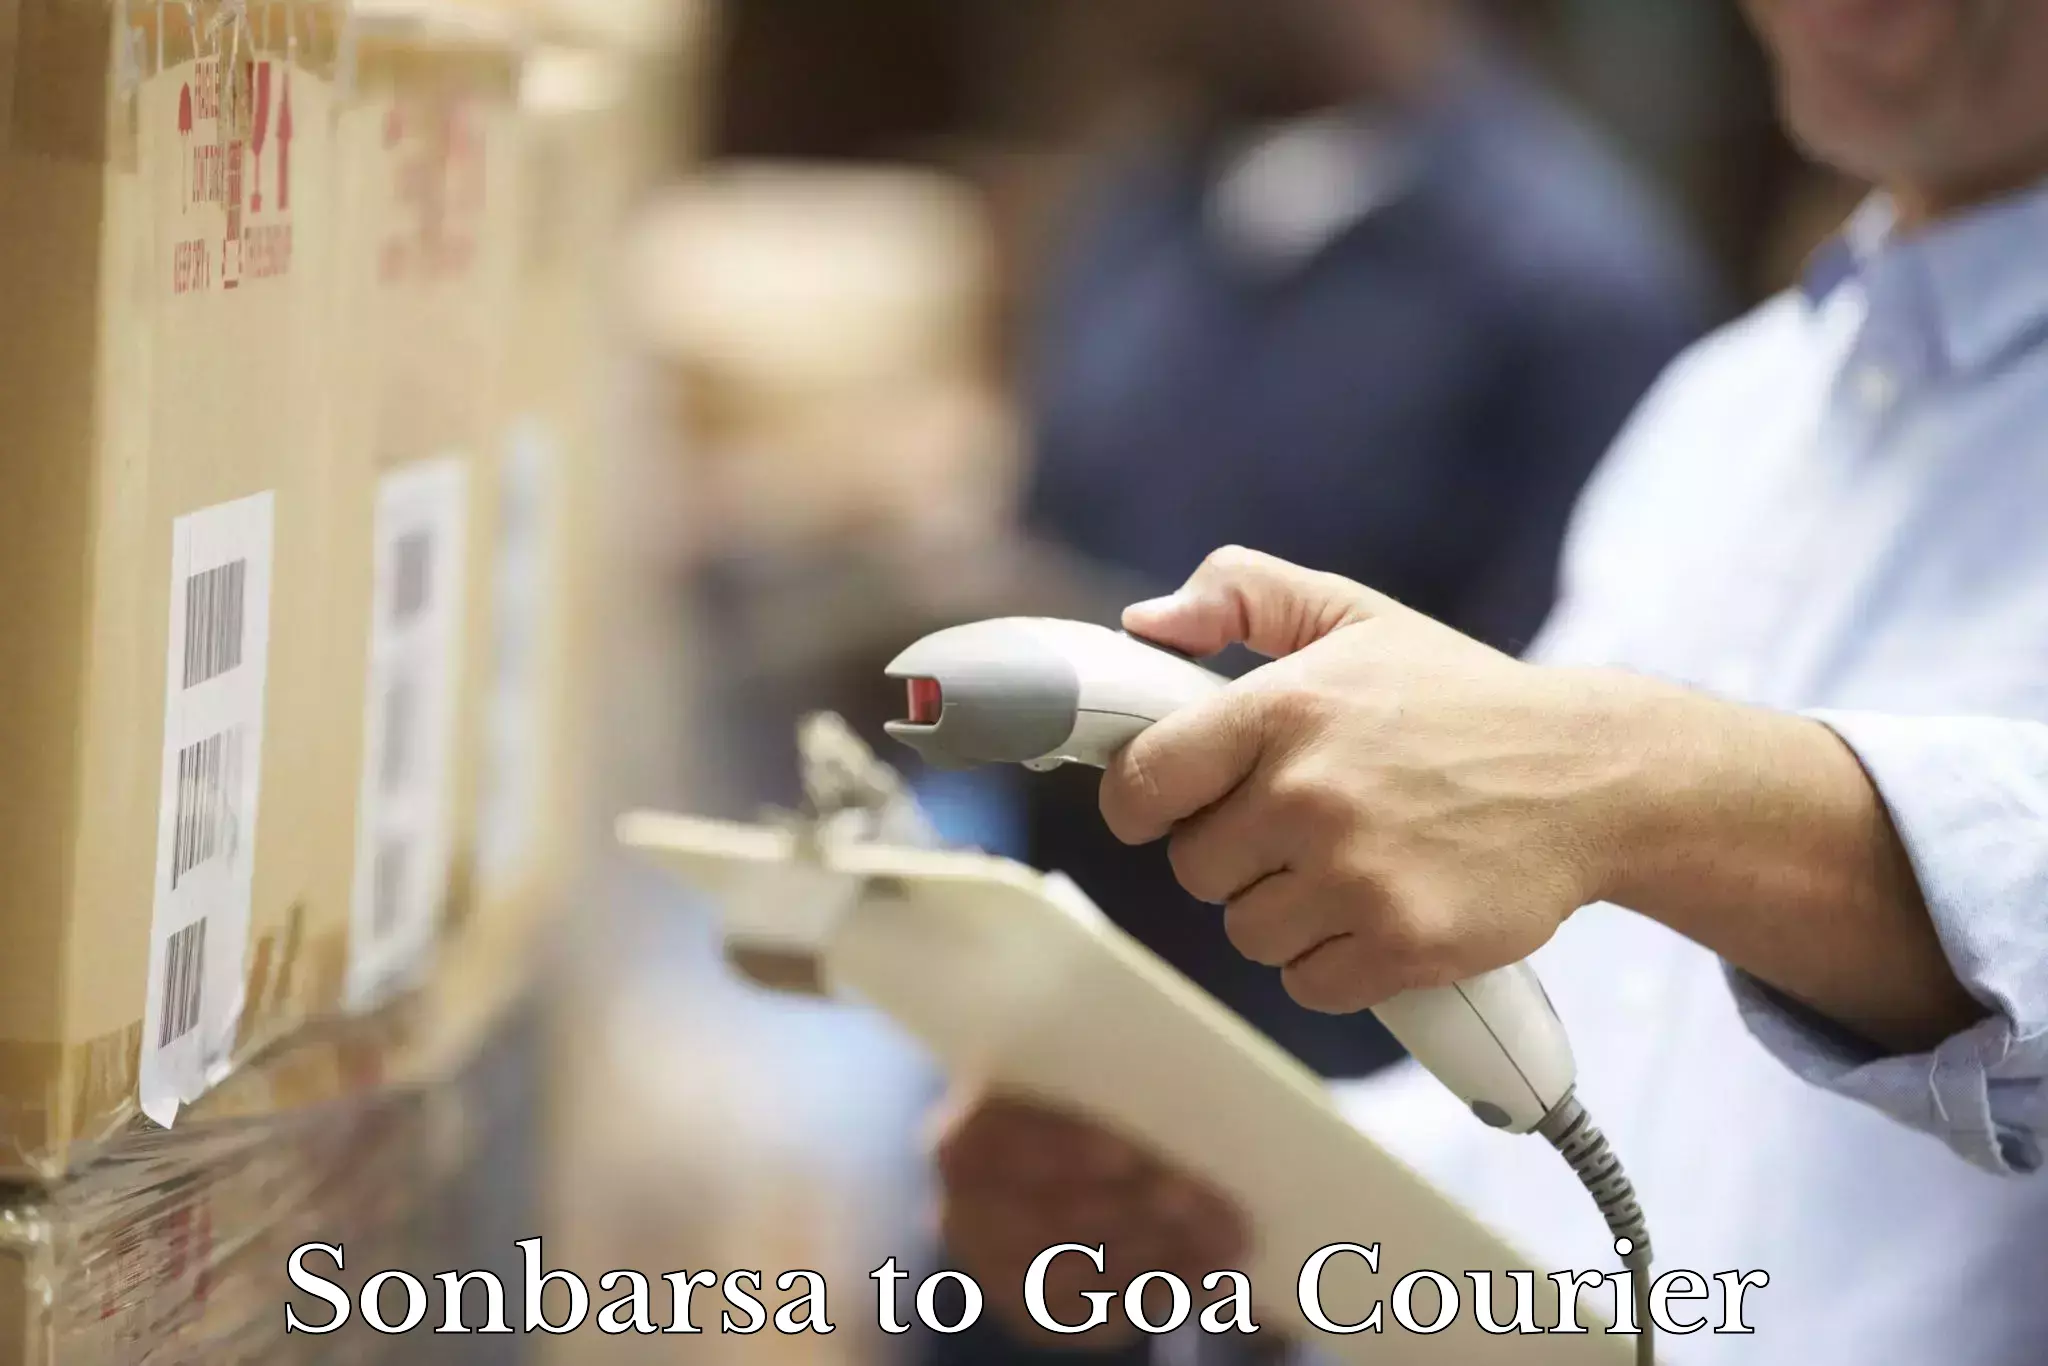 Online package tracking Sonbarsa to Vasco da Gama